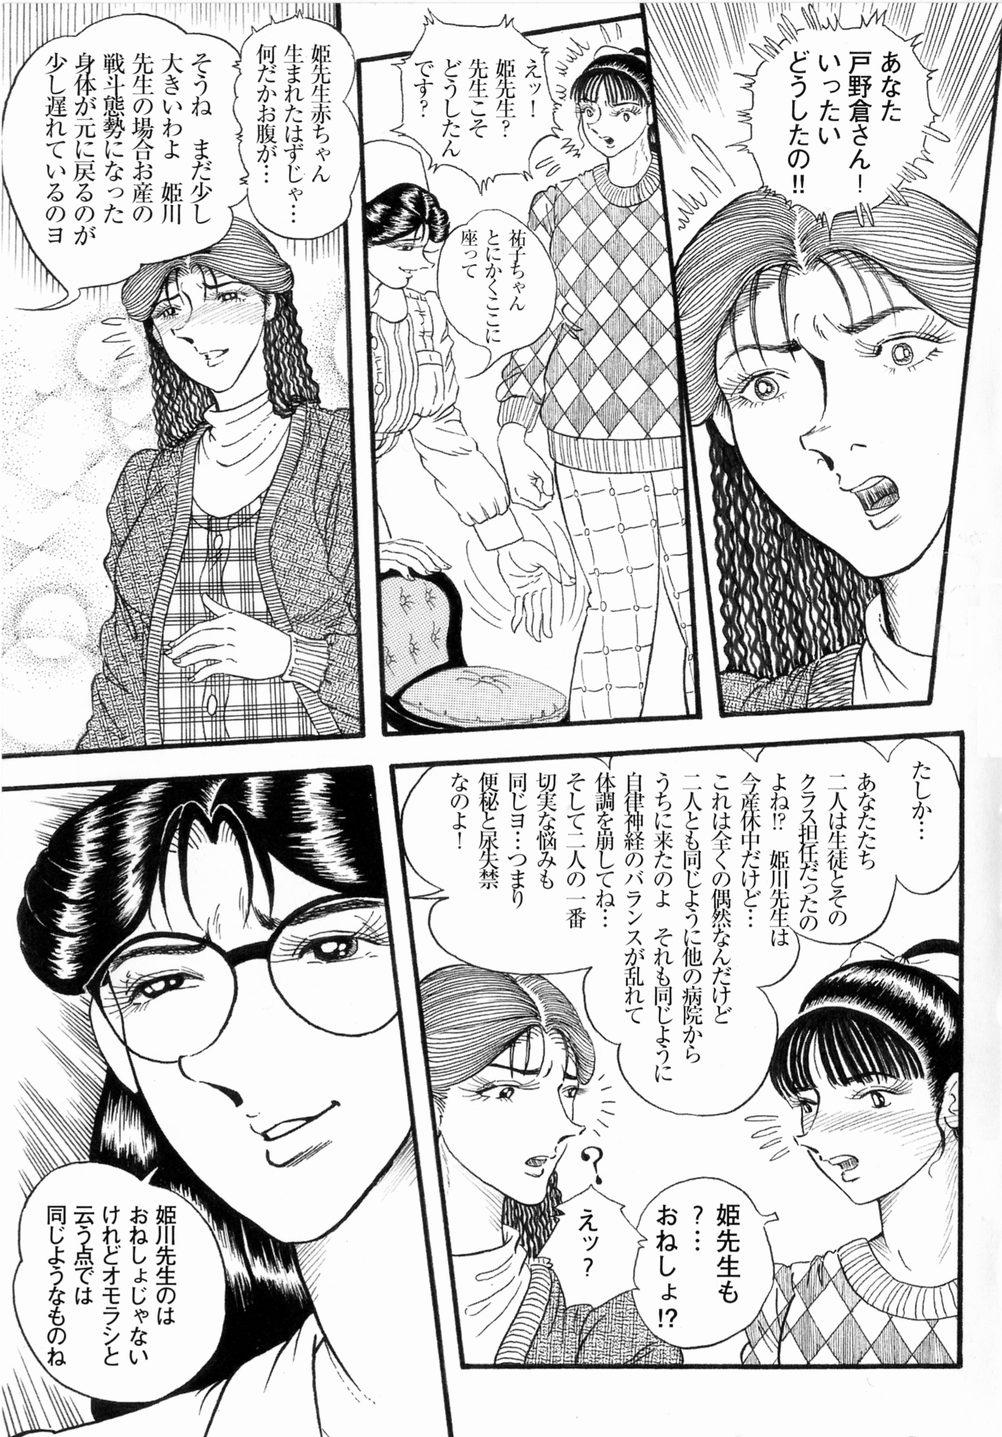 Sucks Hashimoto Iin Shinsatsu Note - Yuuko no Jijou Nami no Jijou Studs - Page 5